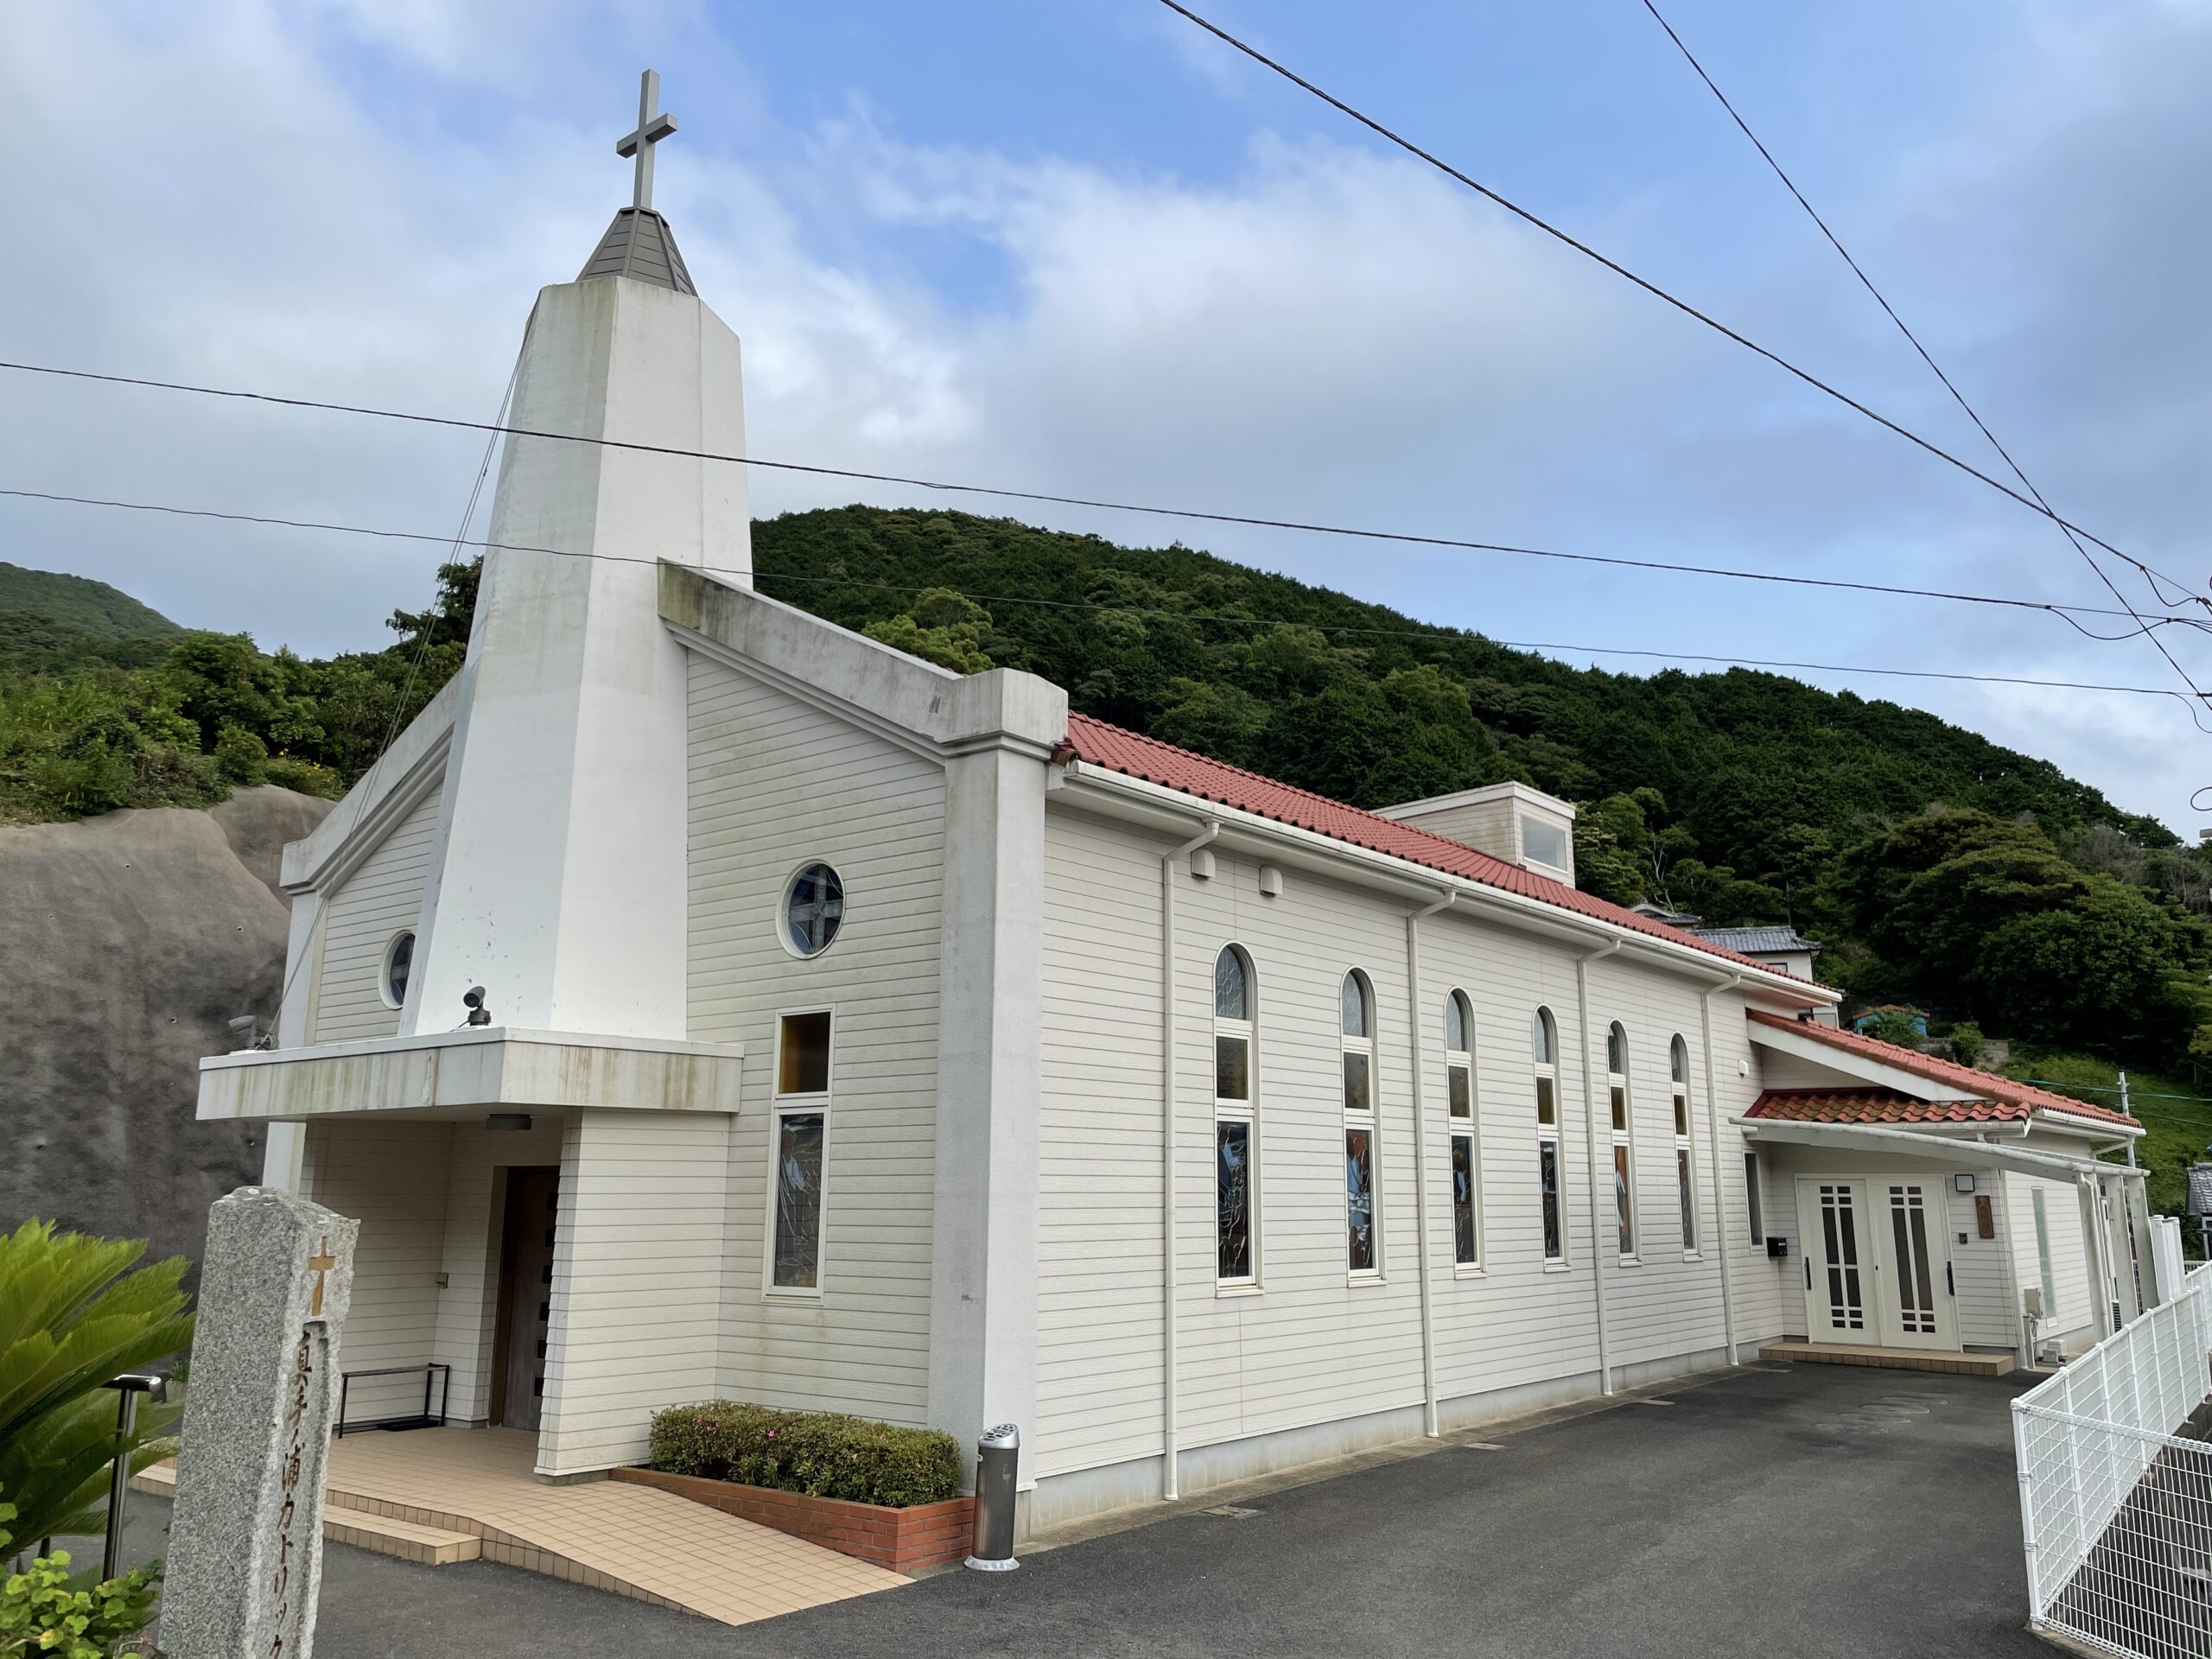 Die Matenoura-Kirche wurde 1956 errichtet und ist damit relativ neu. Seit 1975 hat sie eine eigene Gemeinde